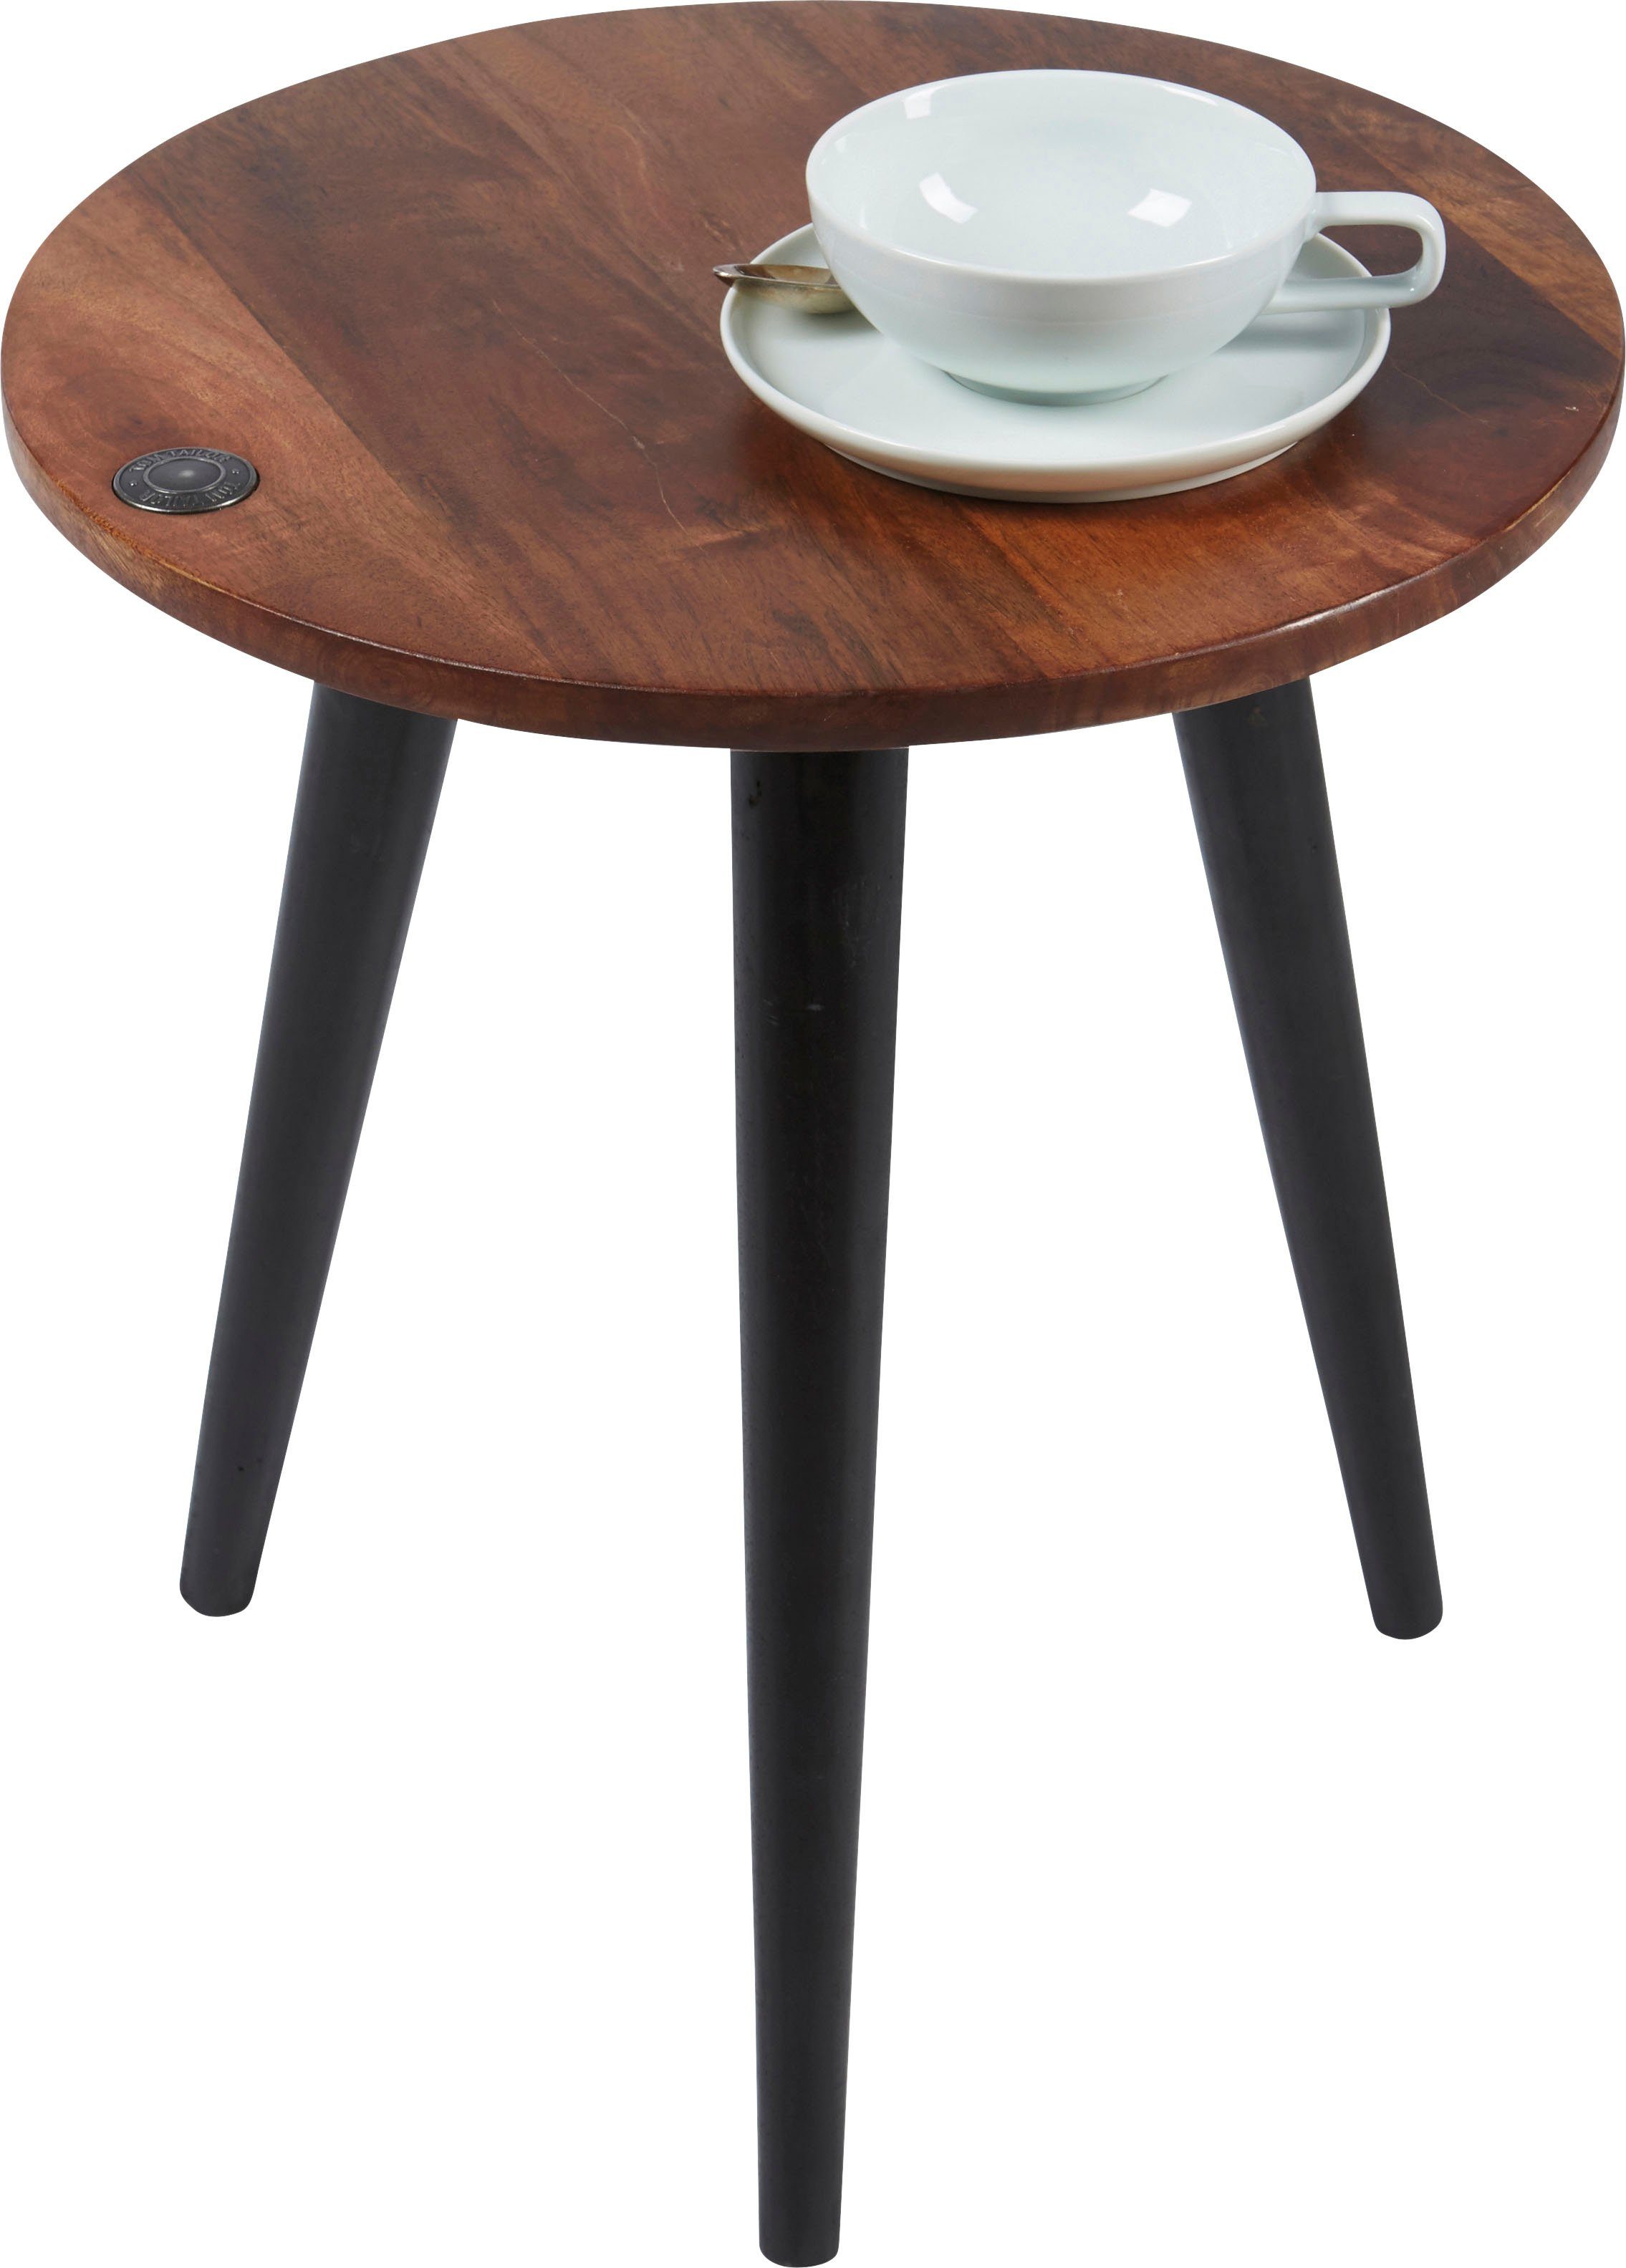 TOM TAILOR HOME Beistelltisch T-WOOD TABLE SMALL, Beistelltisch mit Knopfdetail, dunkles Mangoholz und schwarze Beine